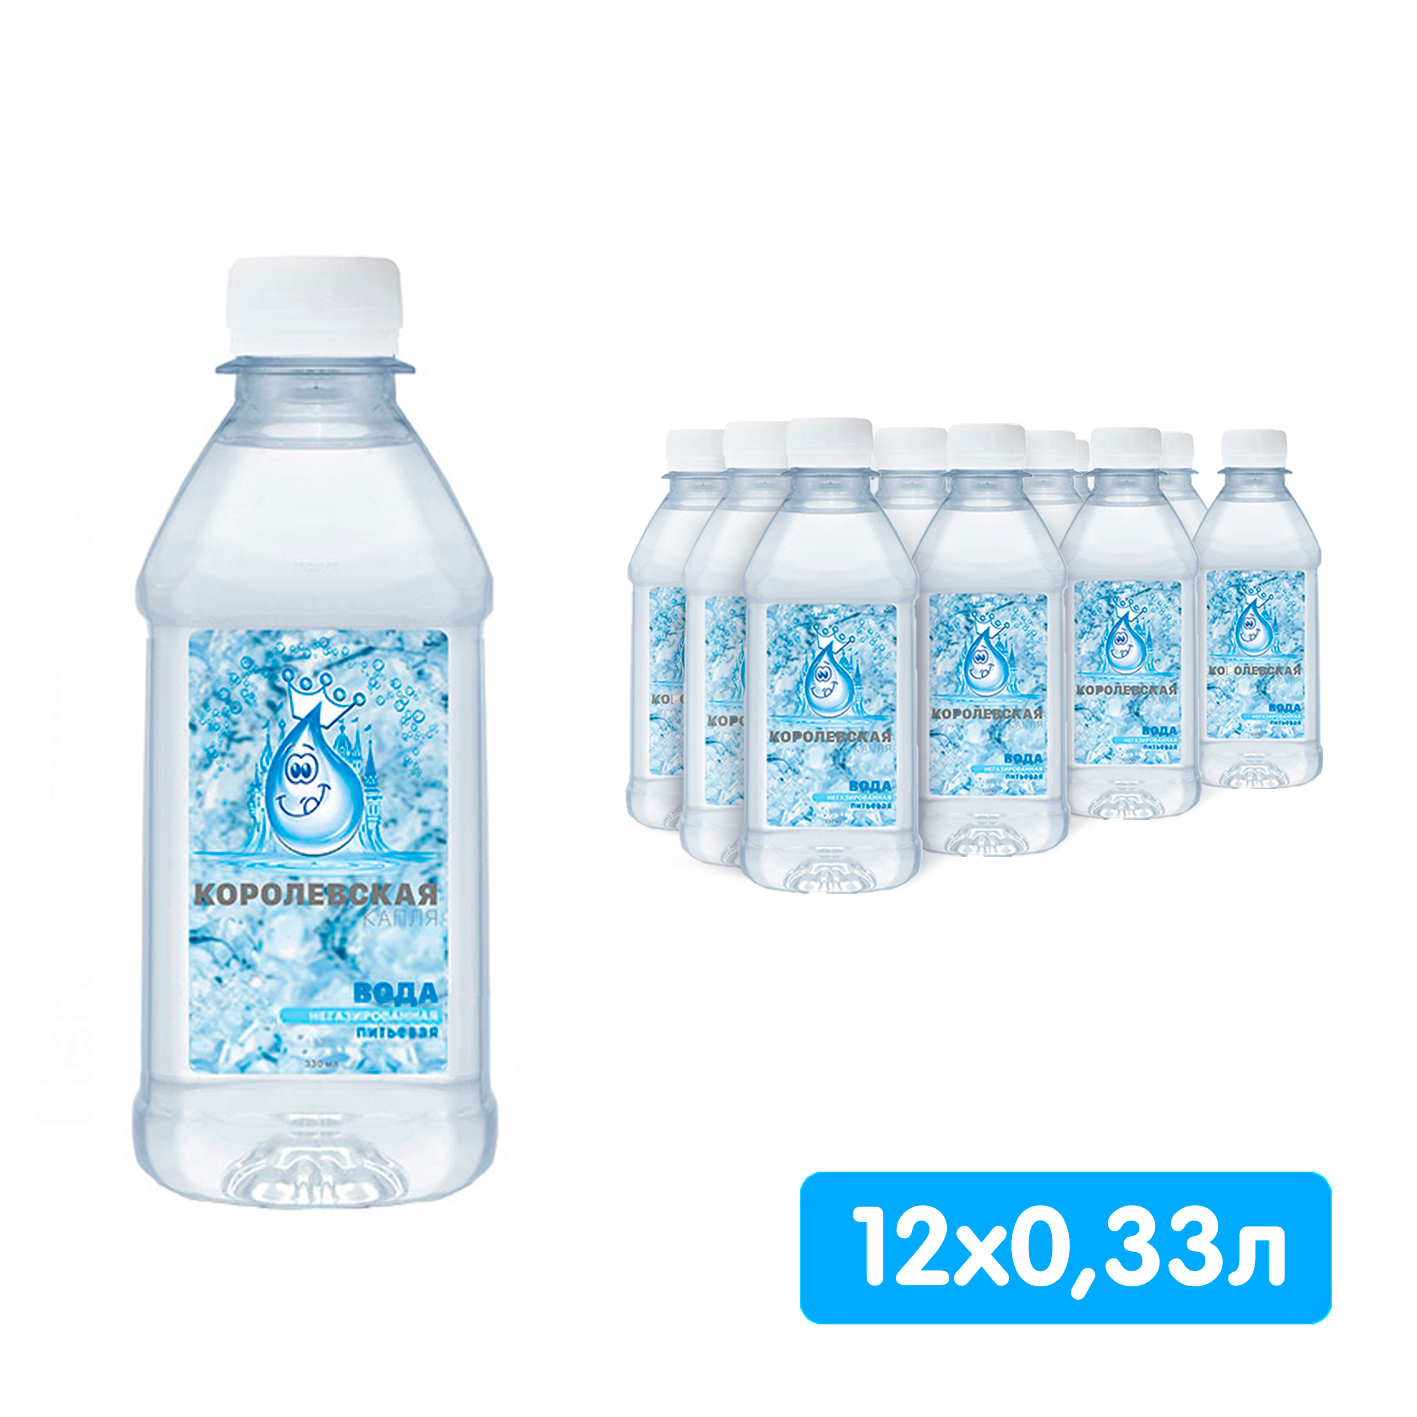 Королевская вода (Мия) 0.33 литра, без газа, пэт, 12 шт. в уп.